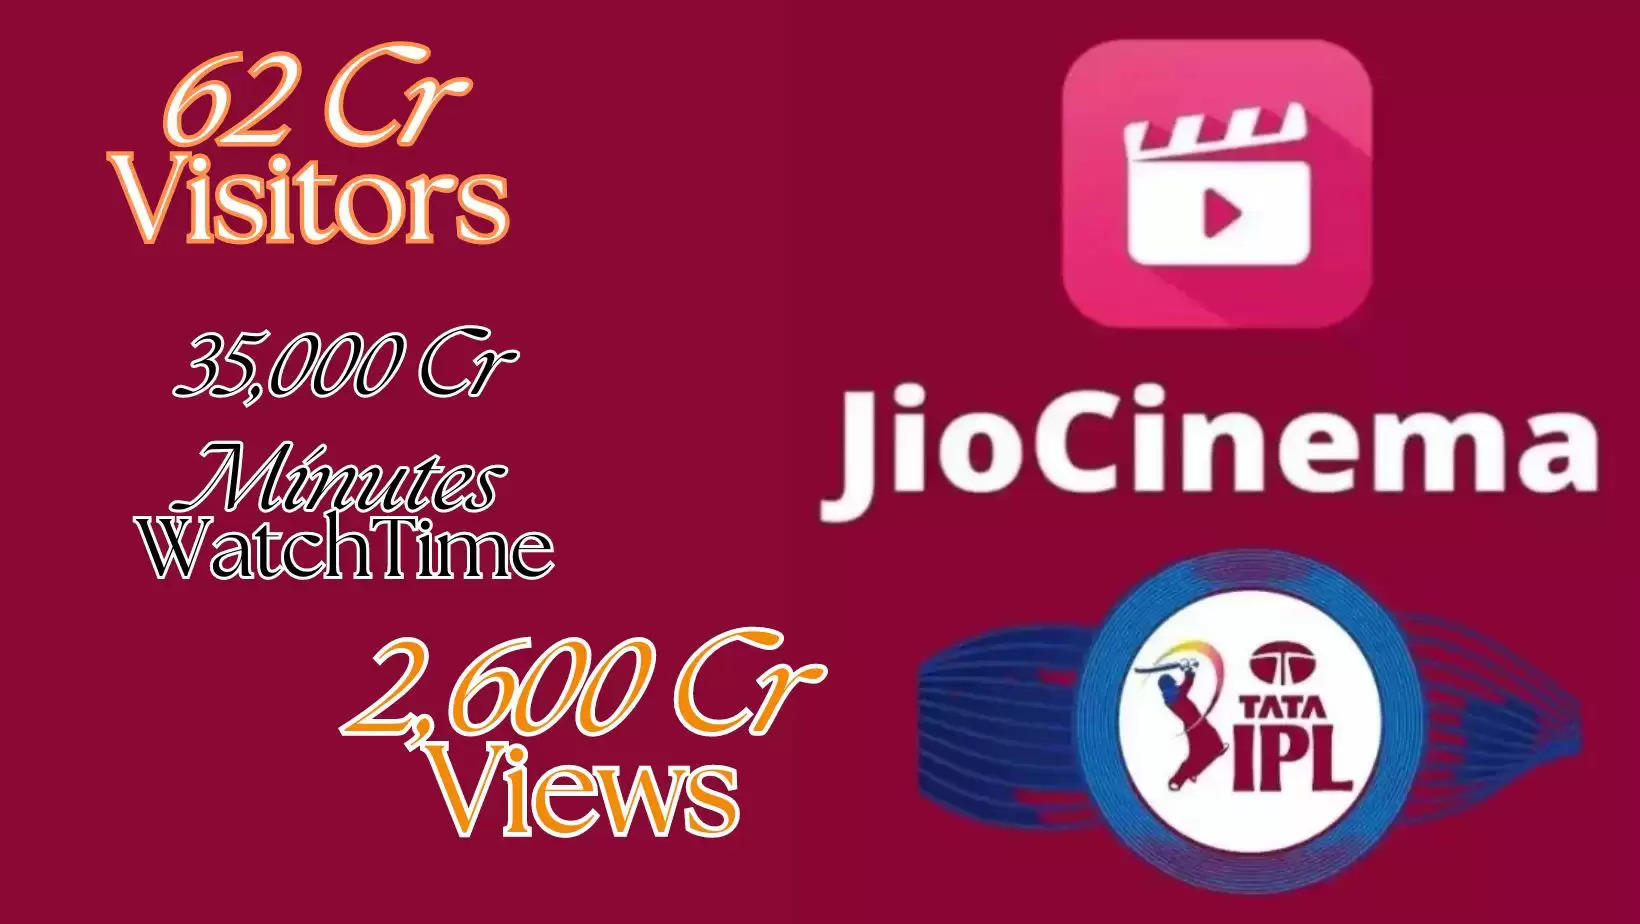 Jio Cinema ने 62Cr दर्शक, 2,600Cr व्यूज़ और 35,000Cr मिनट वॉच-टाइम का रिकॉर्ड बनाया New Records for RIL Jio Cinema